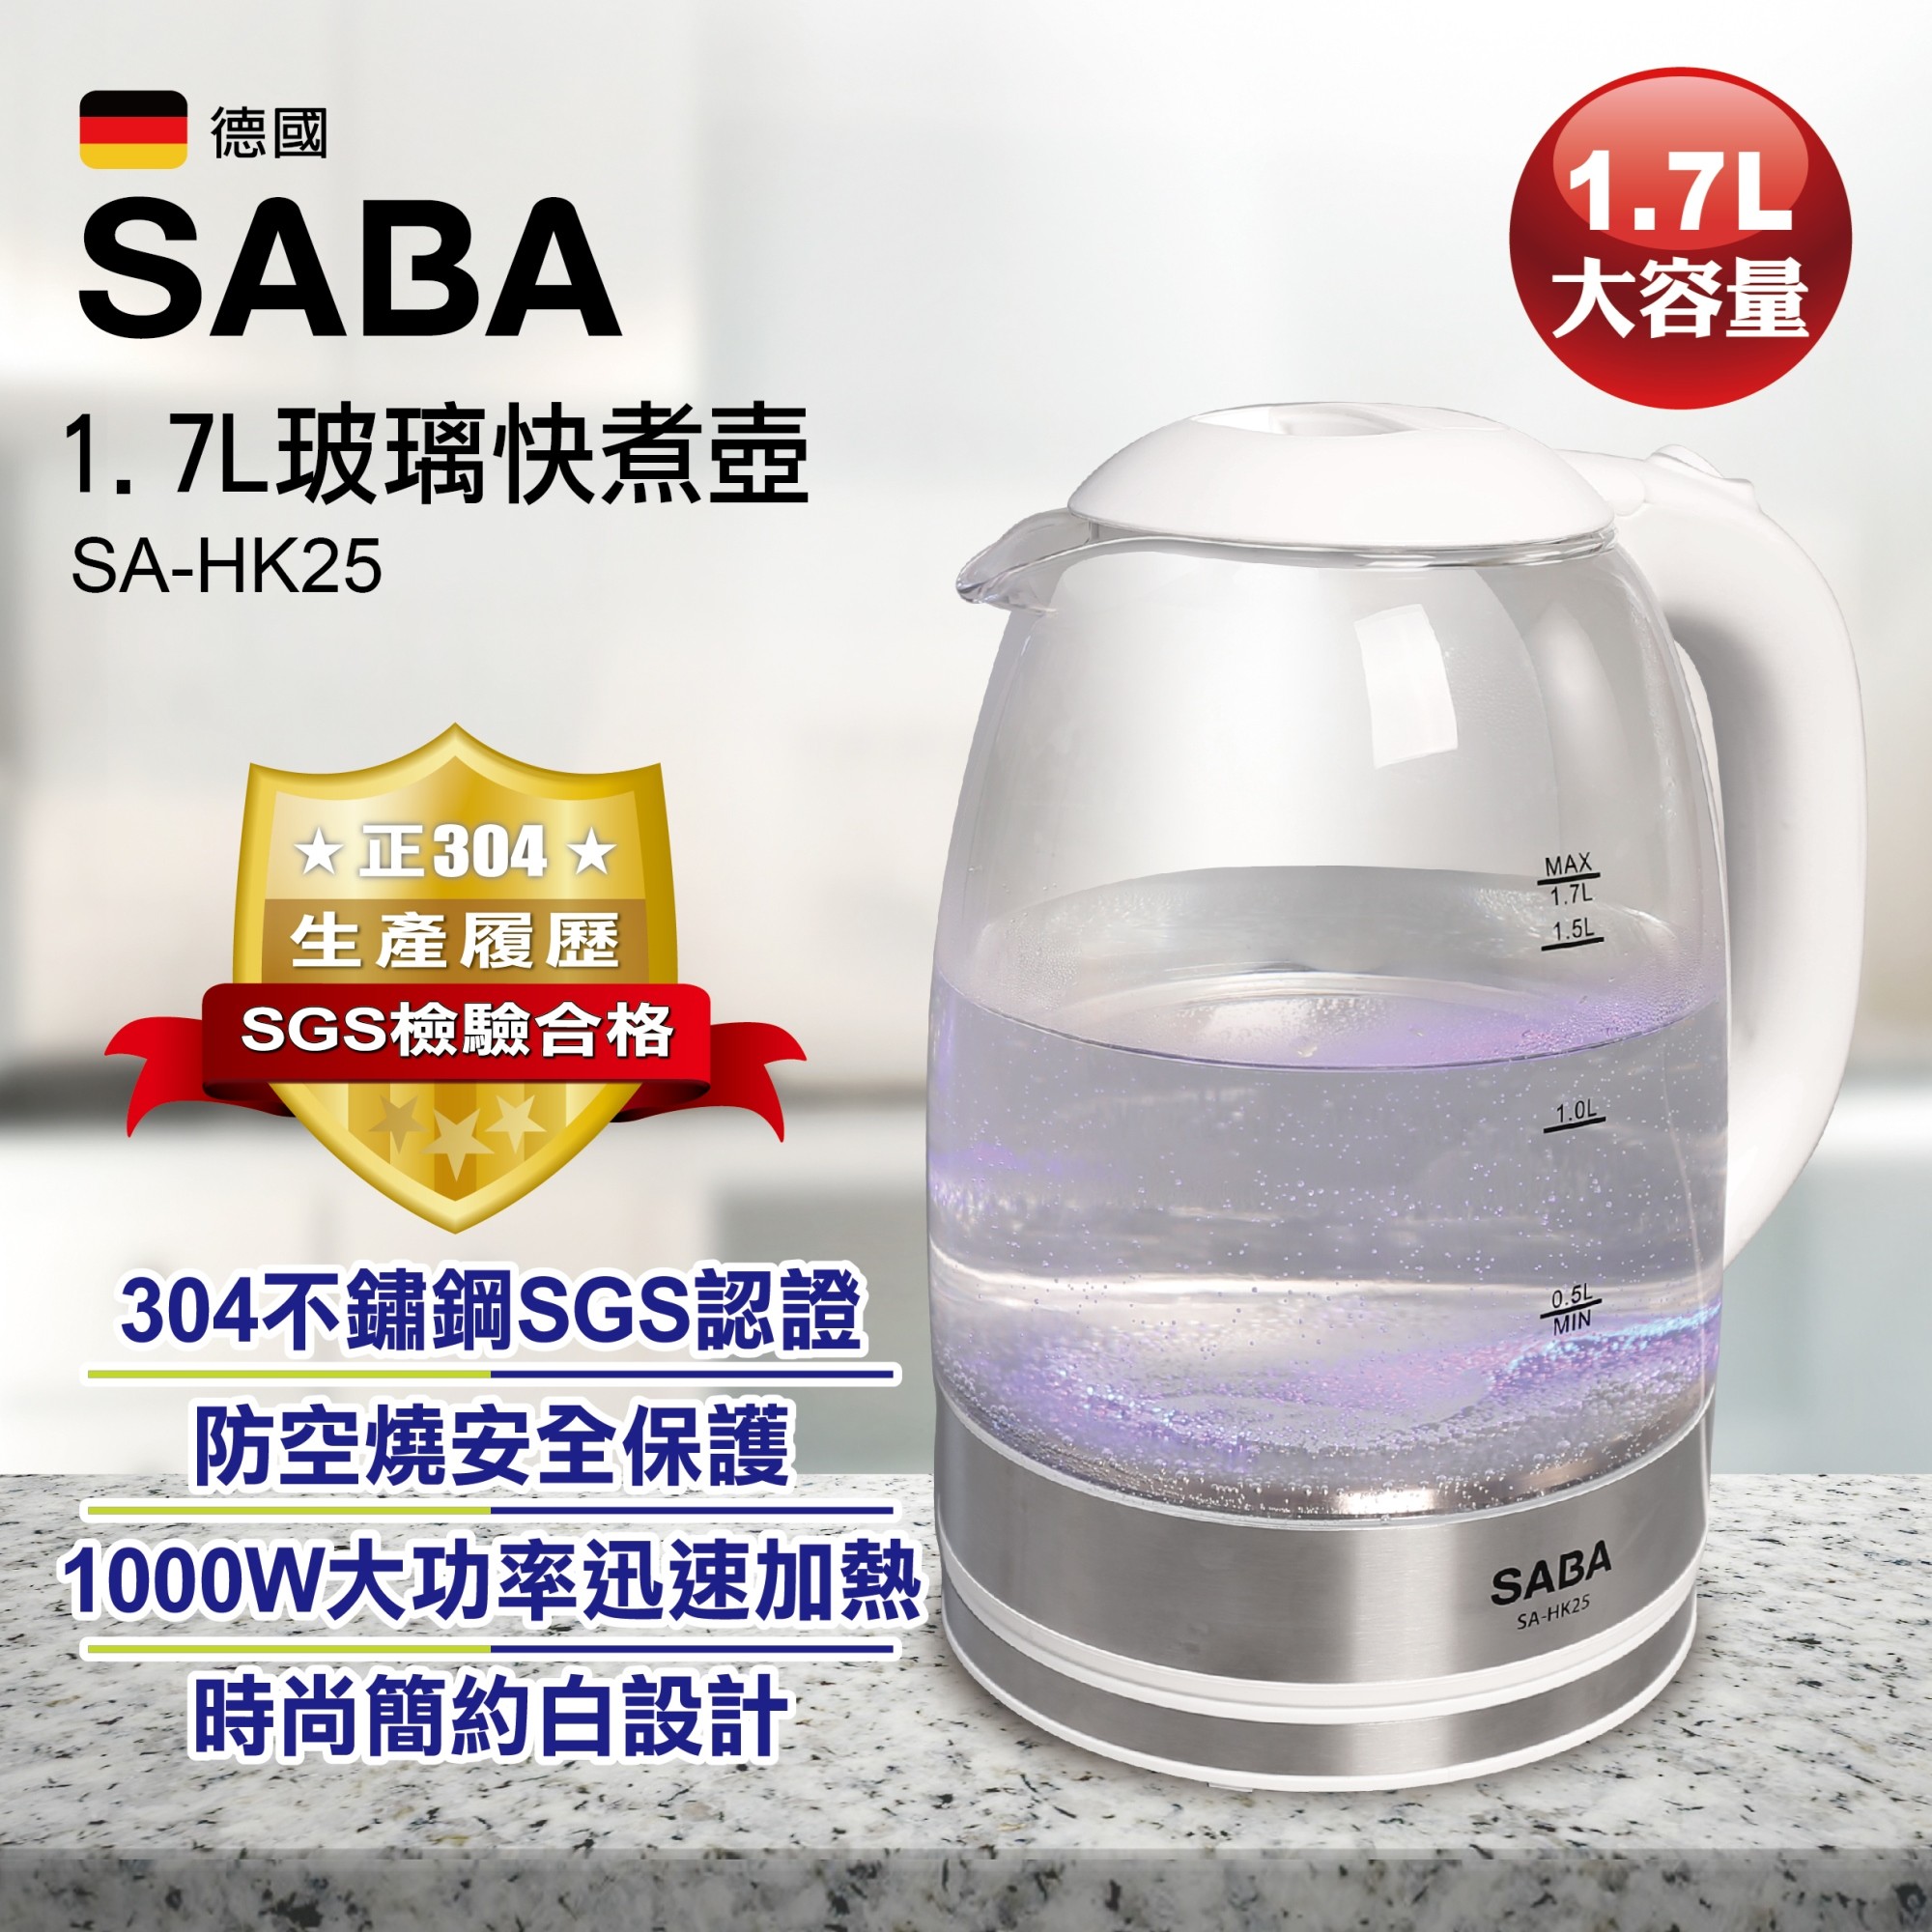 SABA 1.7L大容量強化耐高溫玻璃快煮壺(電茶壺/花茶壺/養生壺) SA-HK25